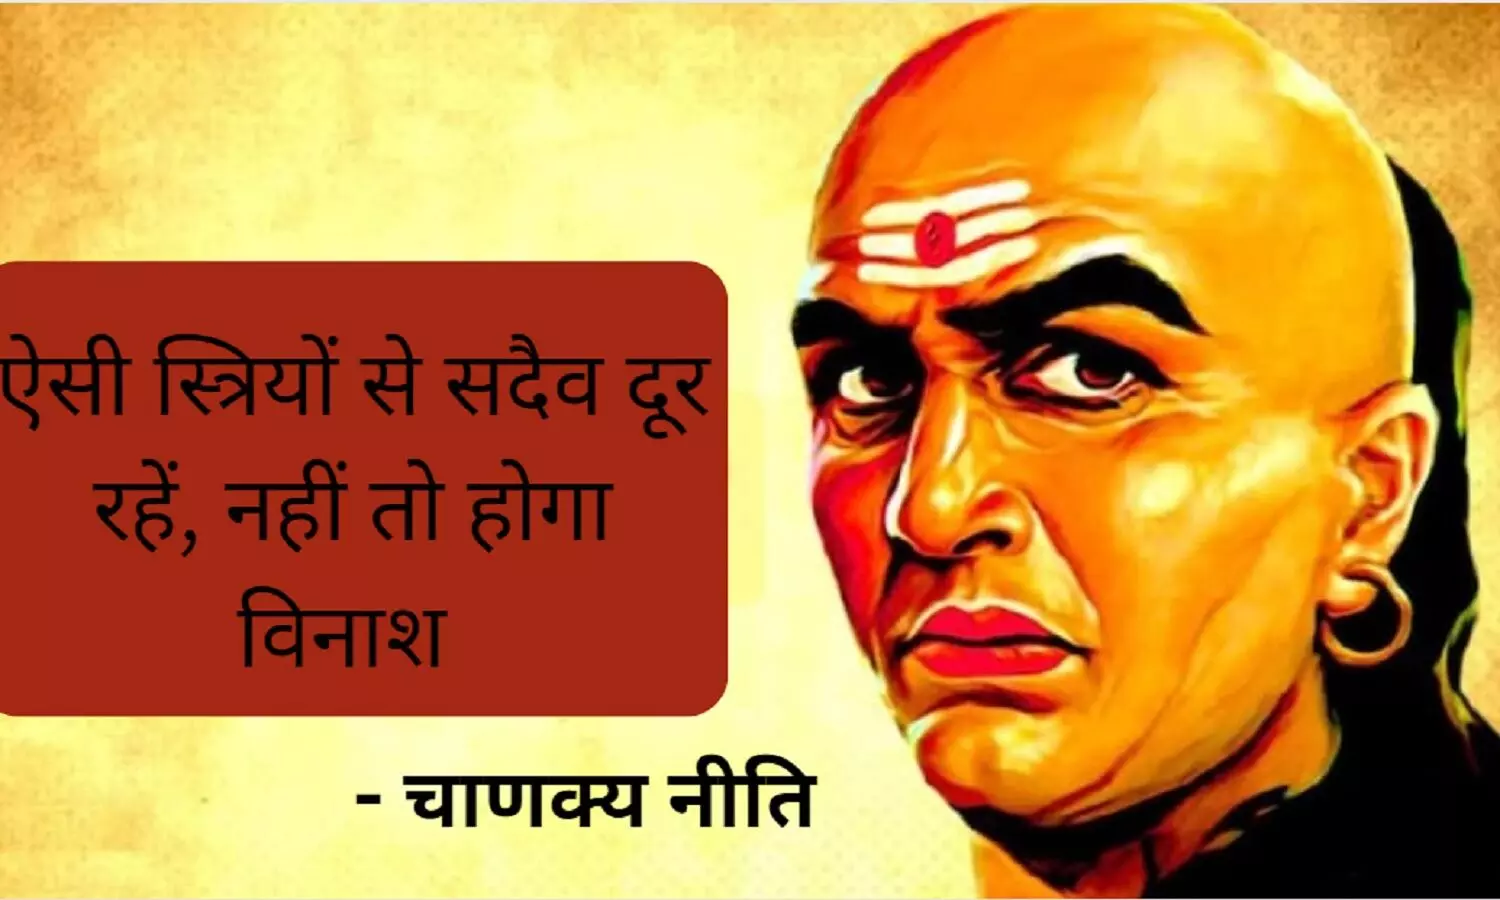 Chanakya Niti On Woman: इस तरह की महिलाओं से सदैव रहना चाहिए दूर, अन्यथा कर देती हैं बर्बाद